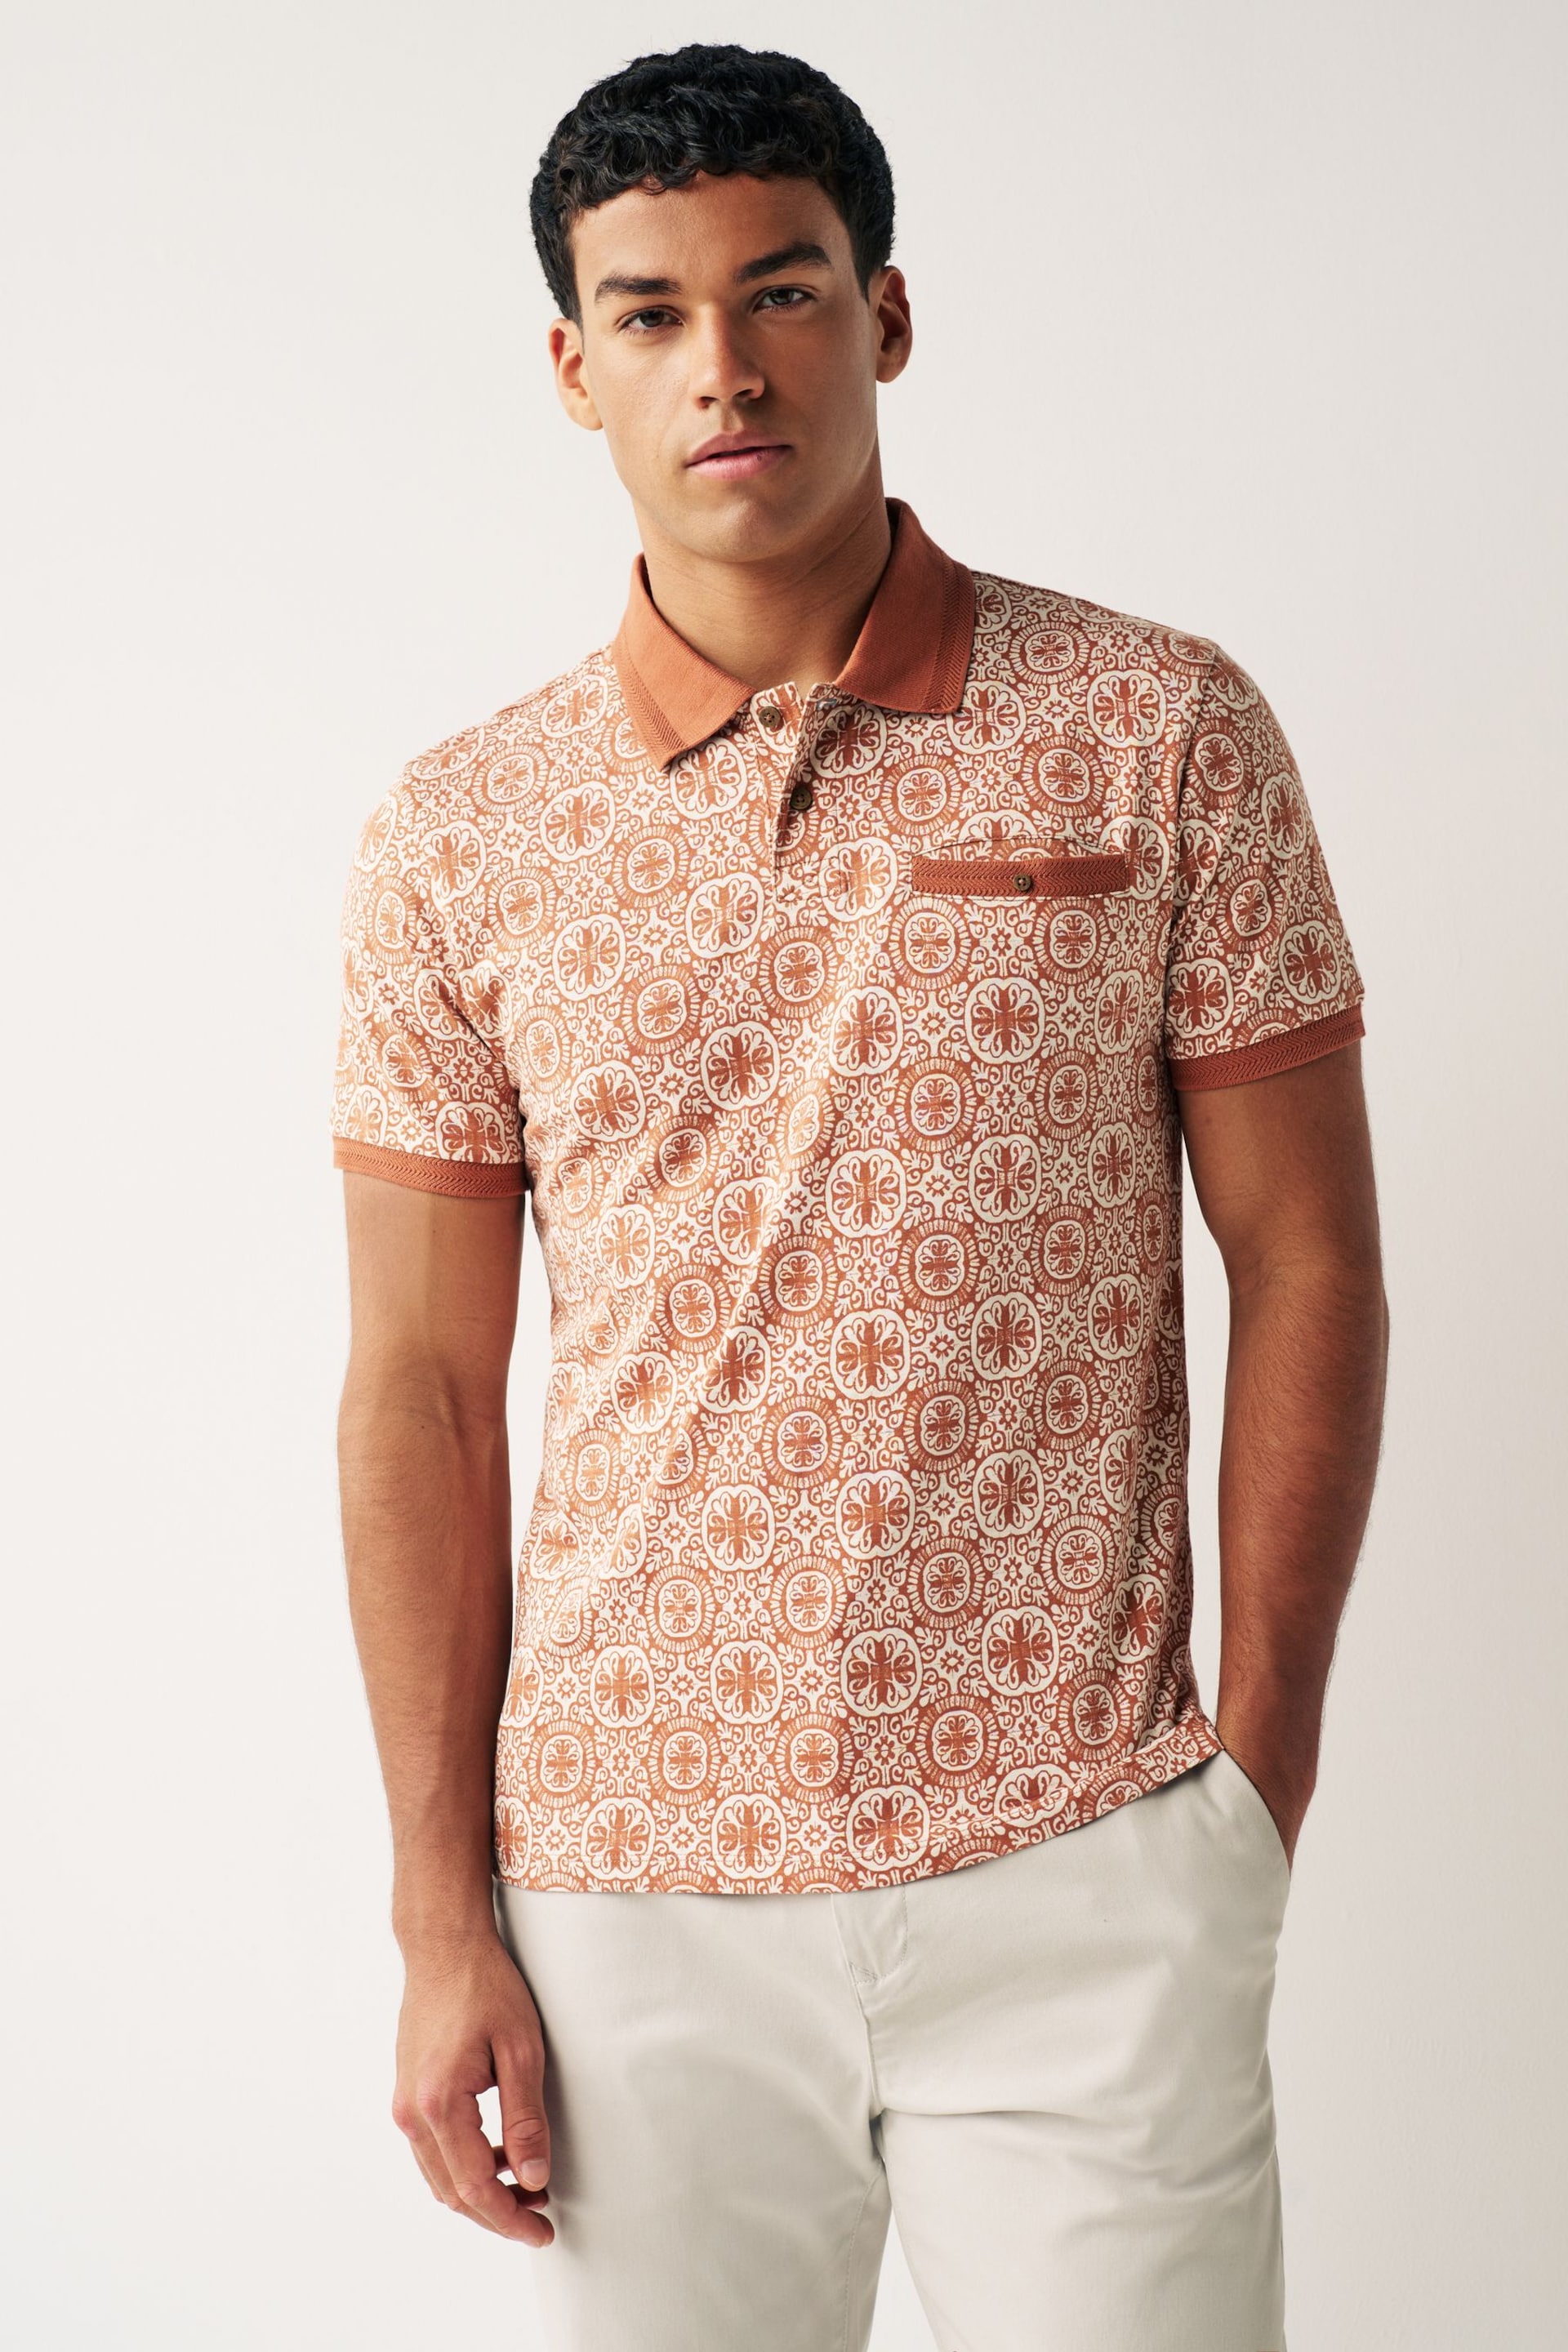 Orange Tile Print Polo Shirt - Image 1 of 7